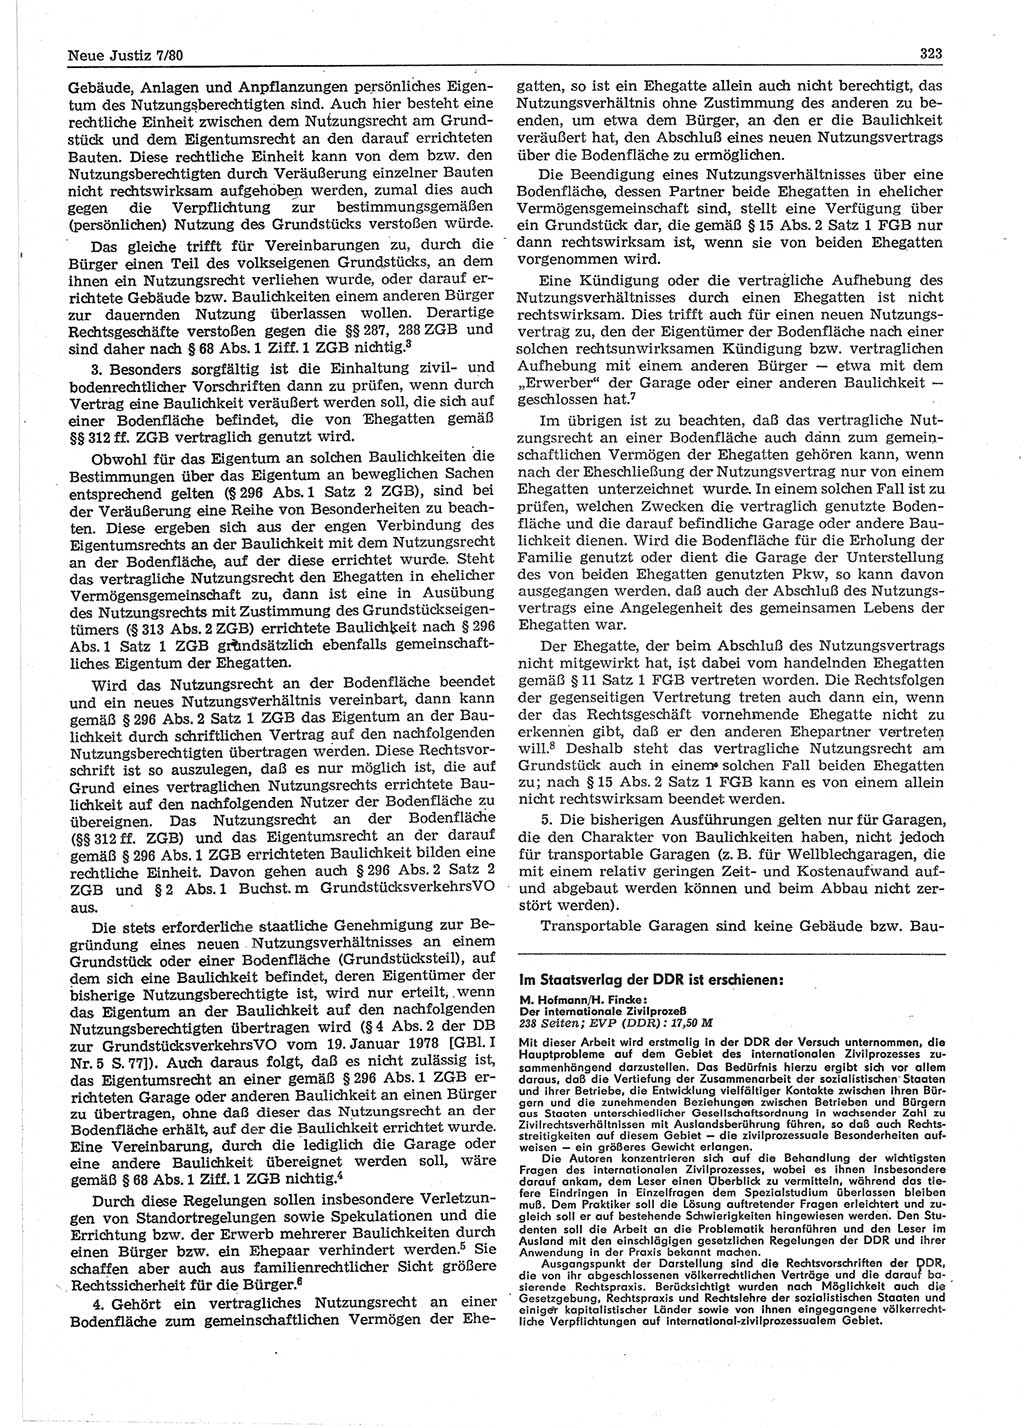 Neue Justiz (NJ), Zeitschrift für sozialistisches Recht und Gesetzlichkeit [Deutsche Demokratische Republik (DDR)], 34. Jahrgang 1980, Seite 323 (NJ DDR 1980, S. 323)